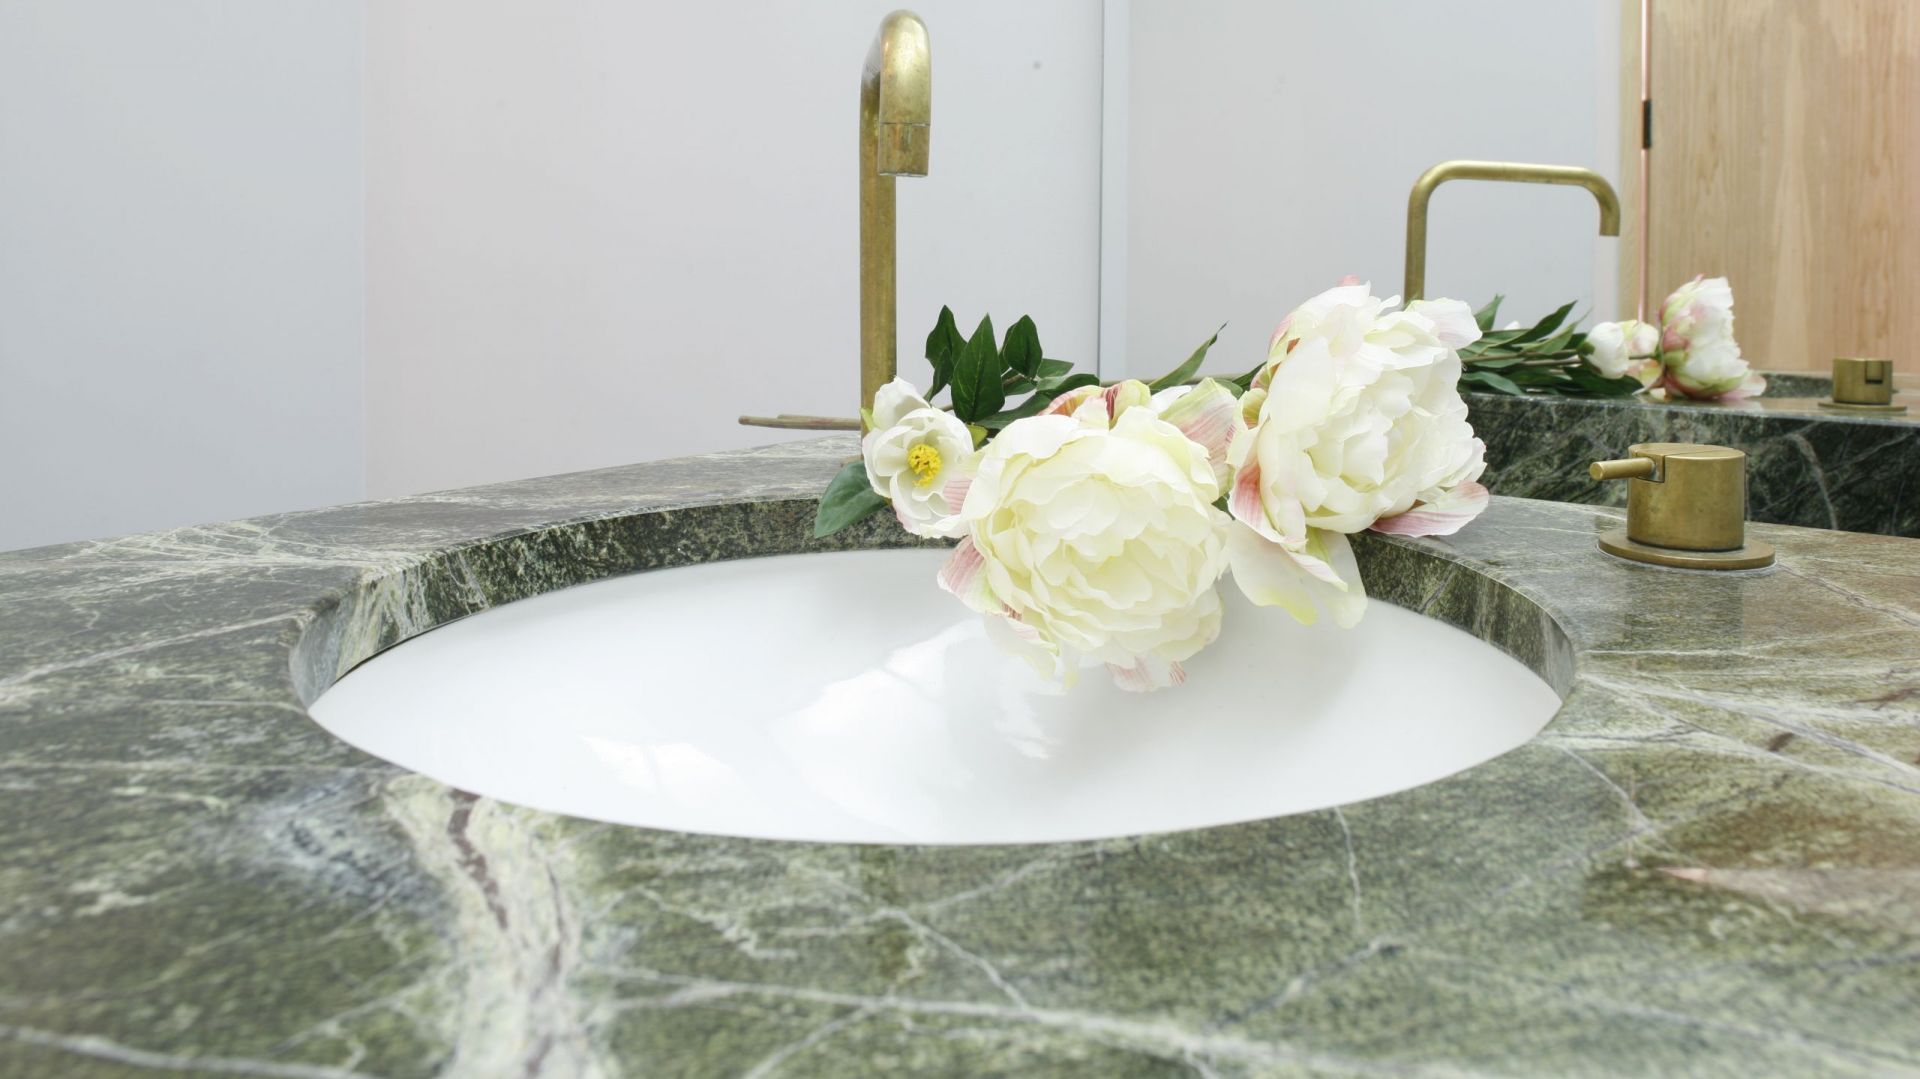 Łazienka dla gości z pięknym marmurem – tak można wykorzystać kamień naturalny